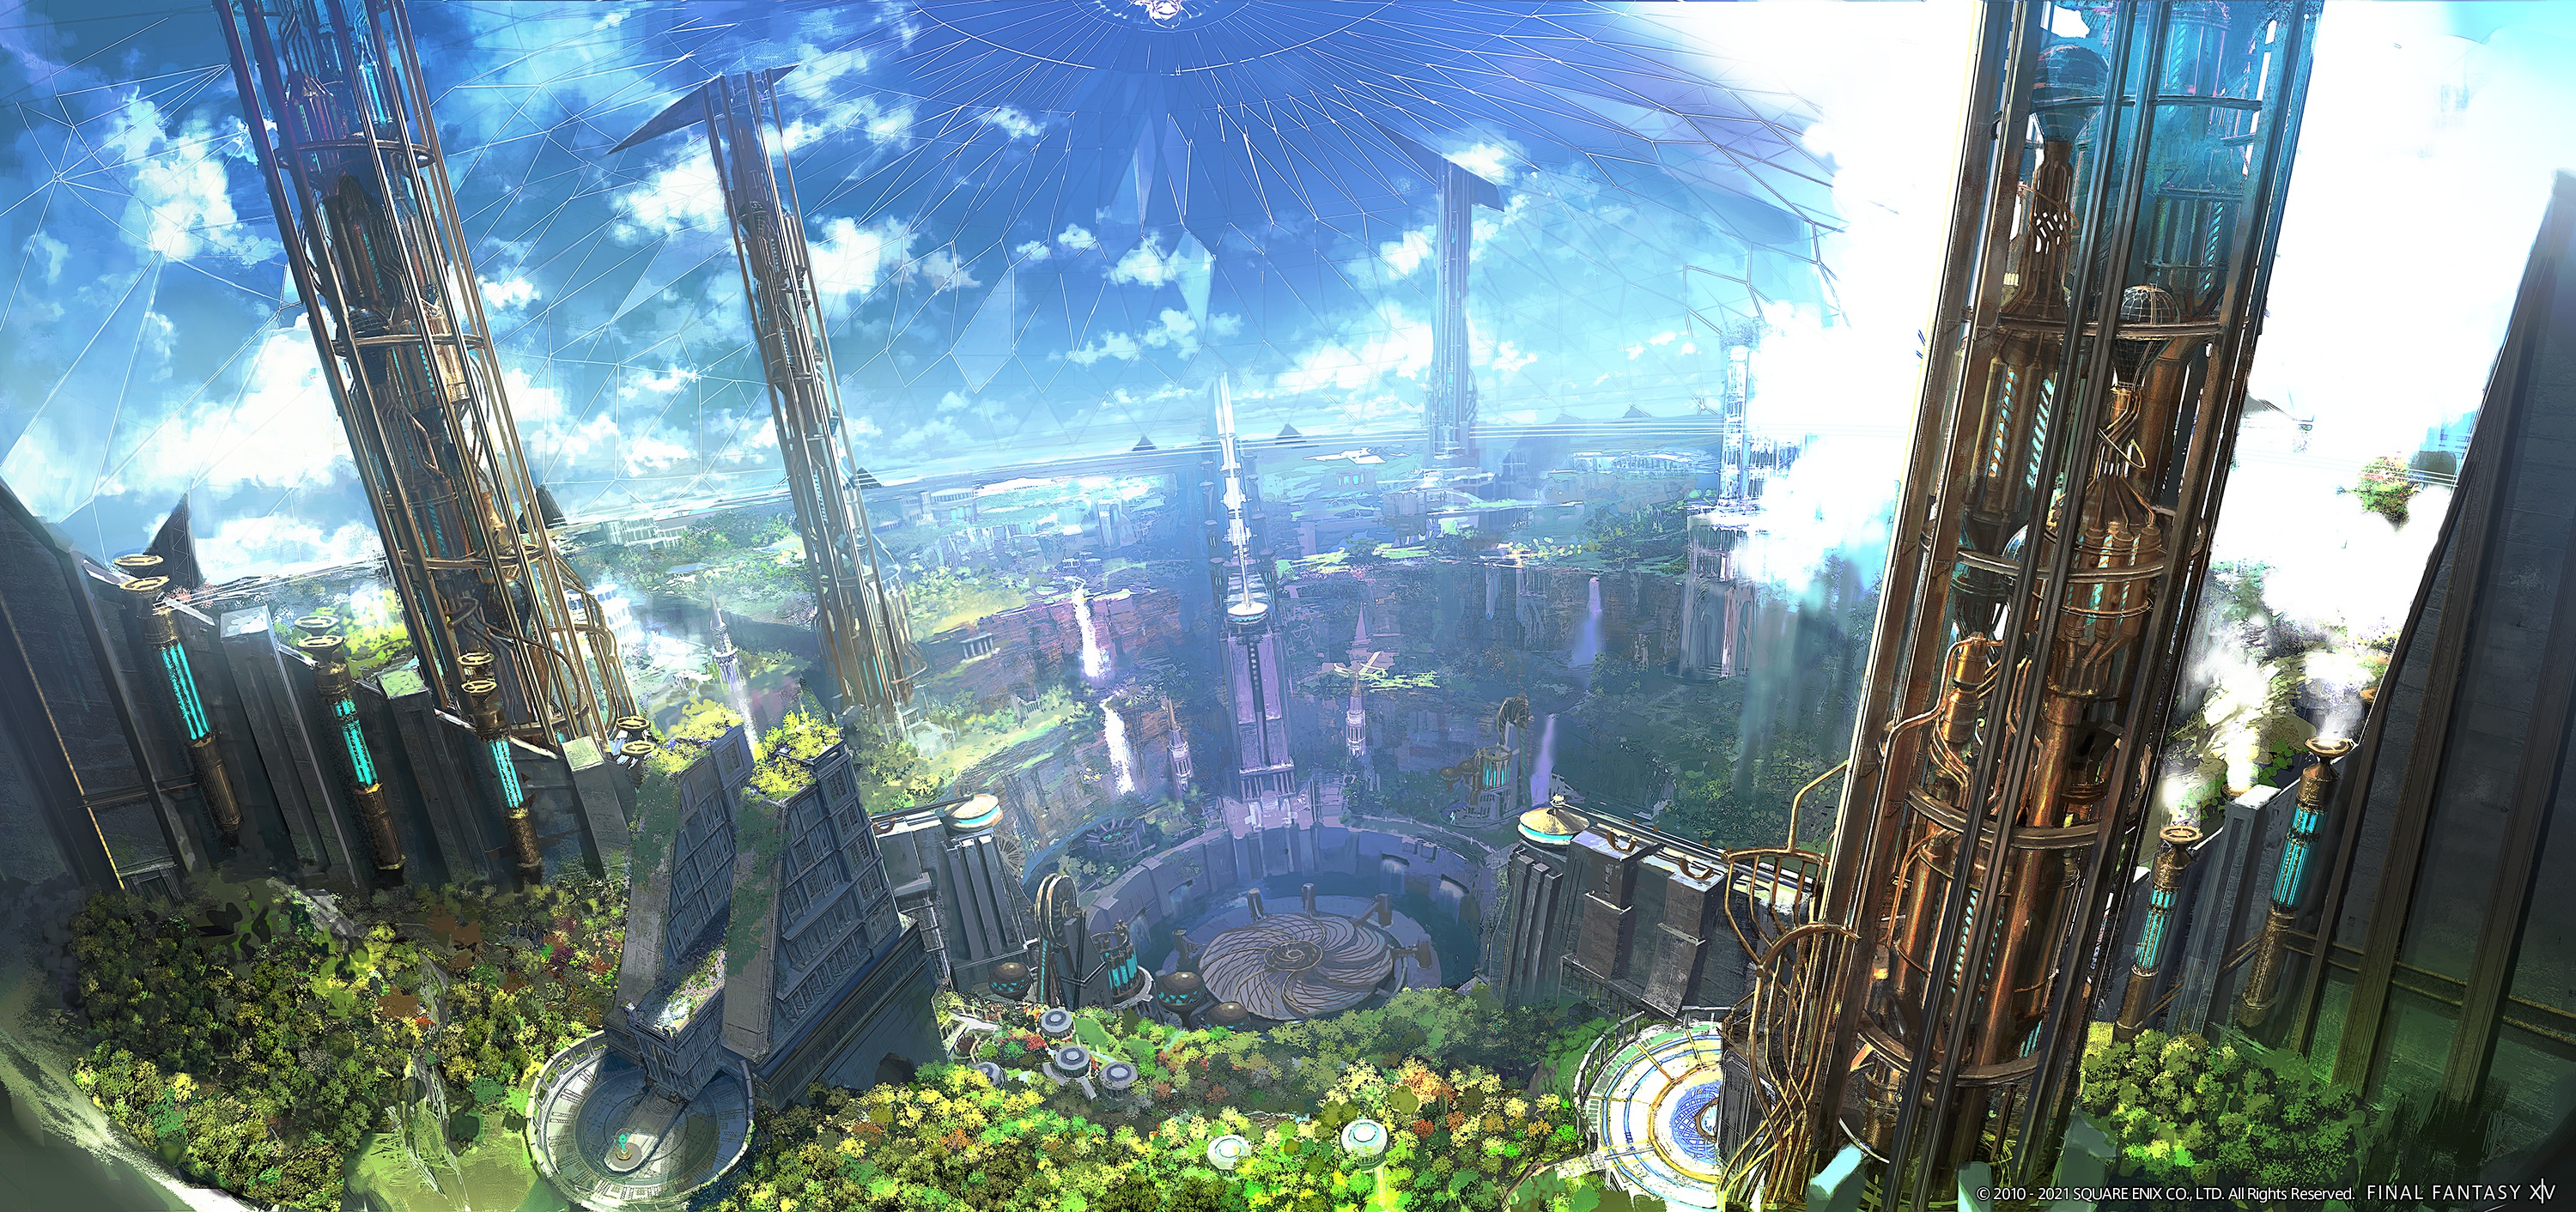 Moescape Fantasy City Fantasy Architecture Video Games Final Fantasy XV Video Game Art Square Enix 3000x1412